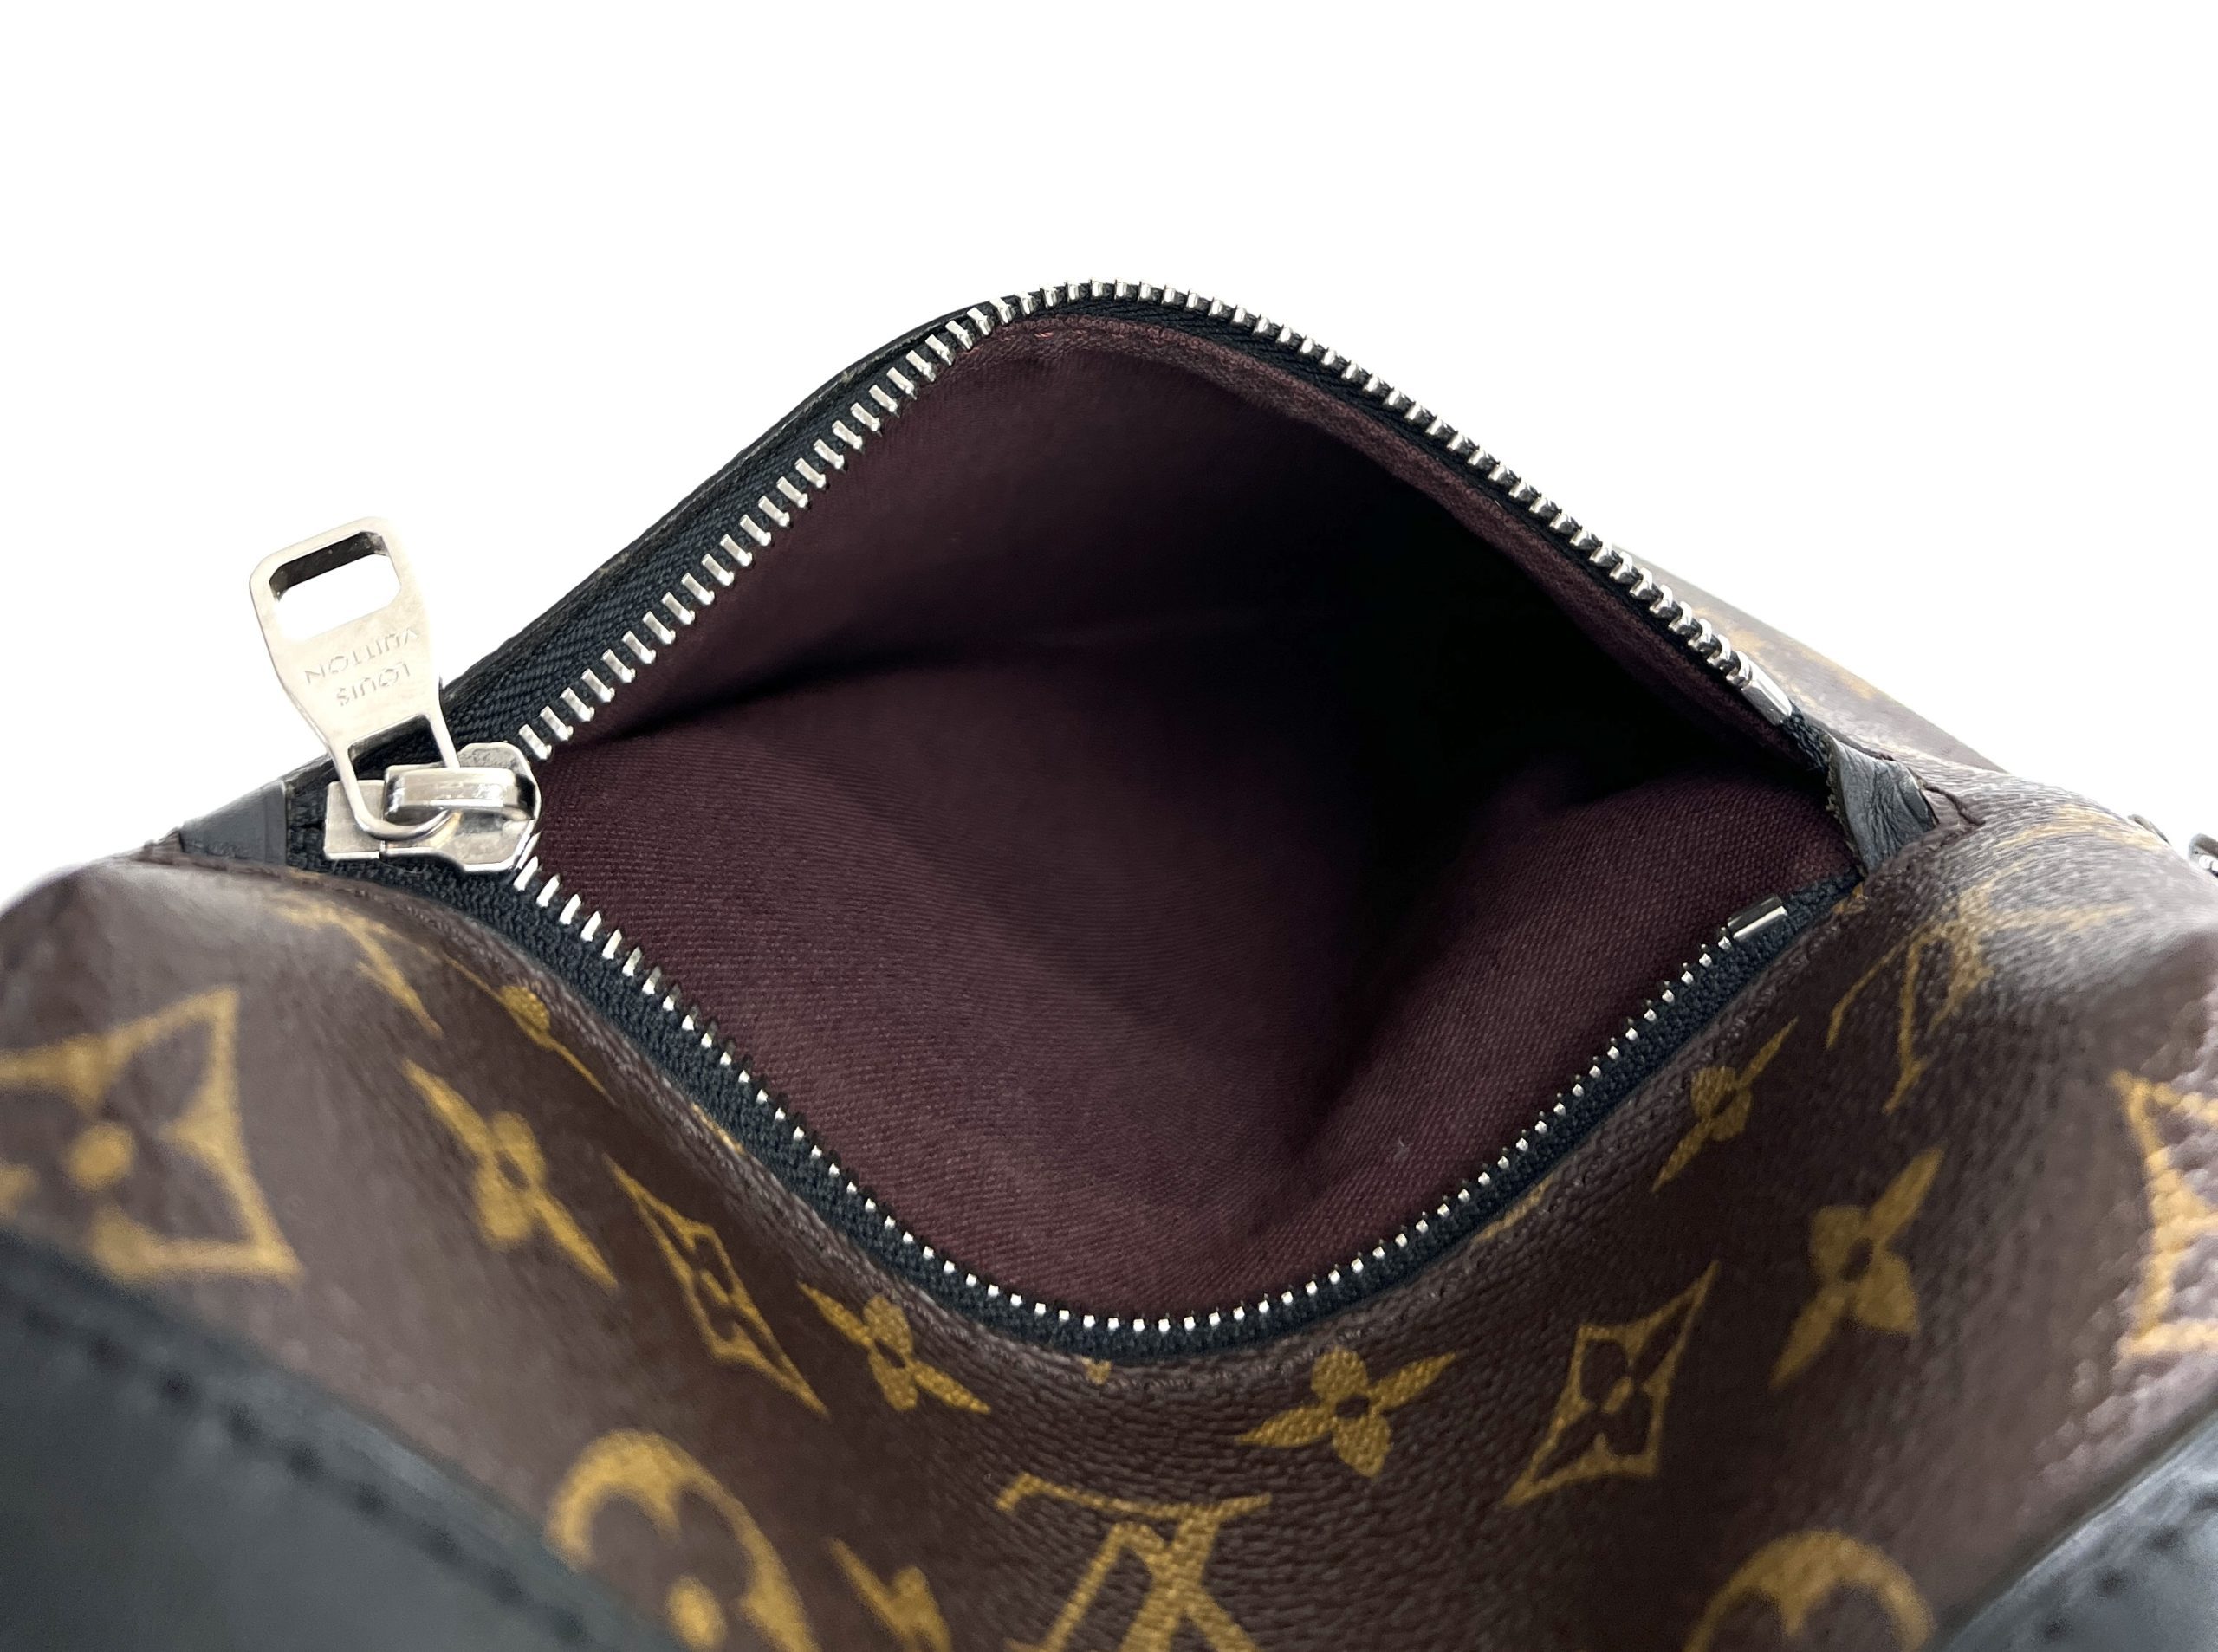 Louis Vuitton - Keepall Bandoulière 45 Bag - Monogram Leather - Bicolore Black Beige - Men - Luxury